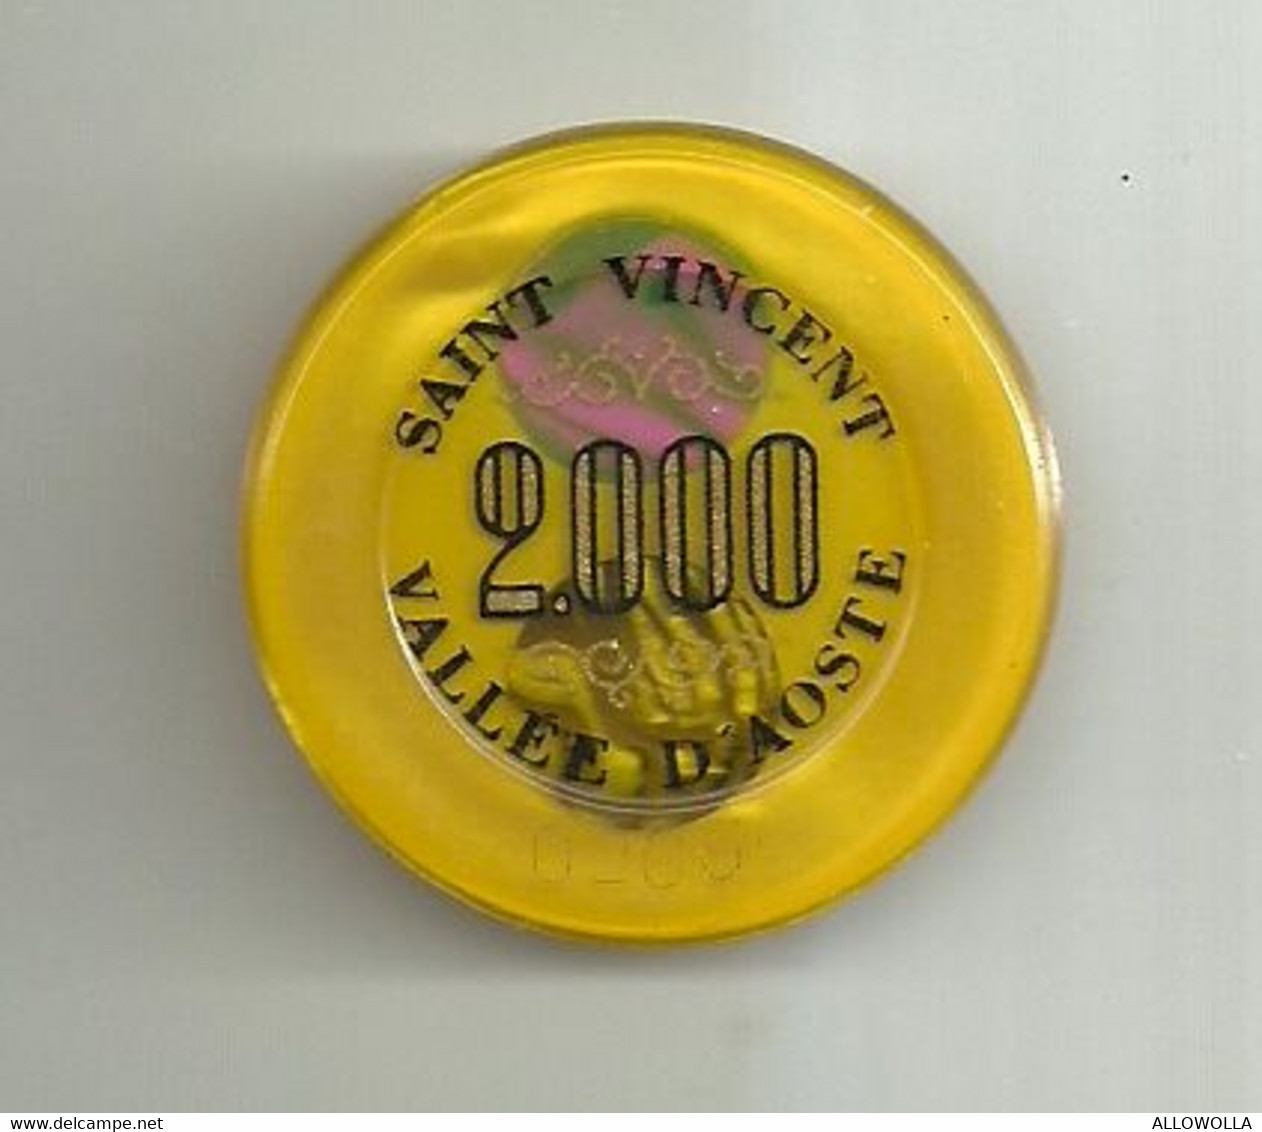 9886" FICHES-CHIPS- CASINO DE LA VALLEE-2000 LIRE" " - Casino